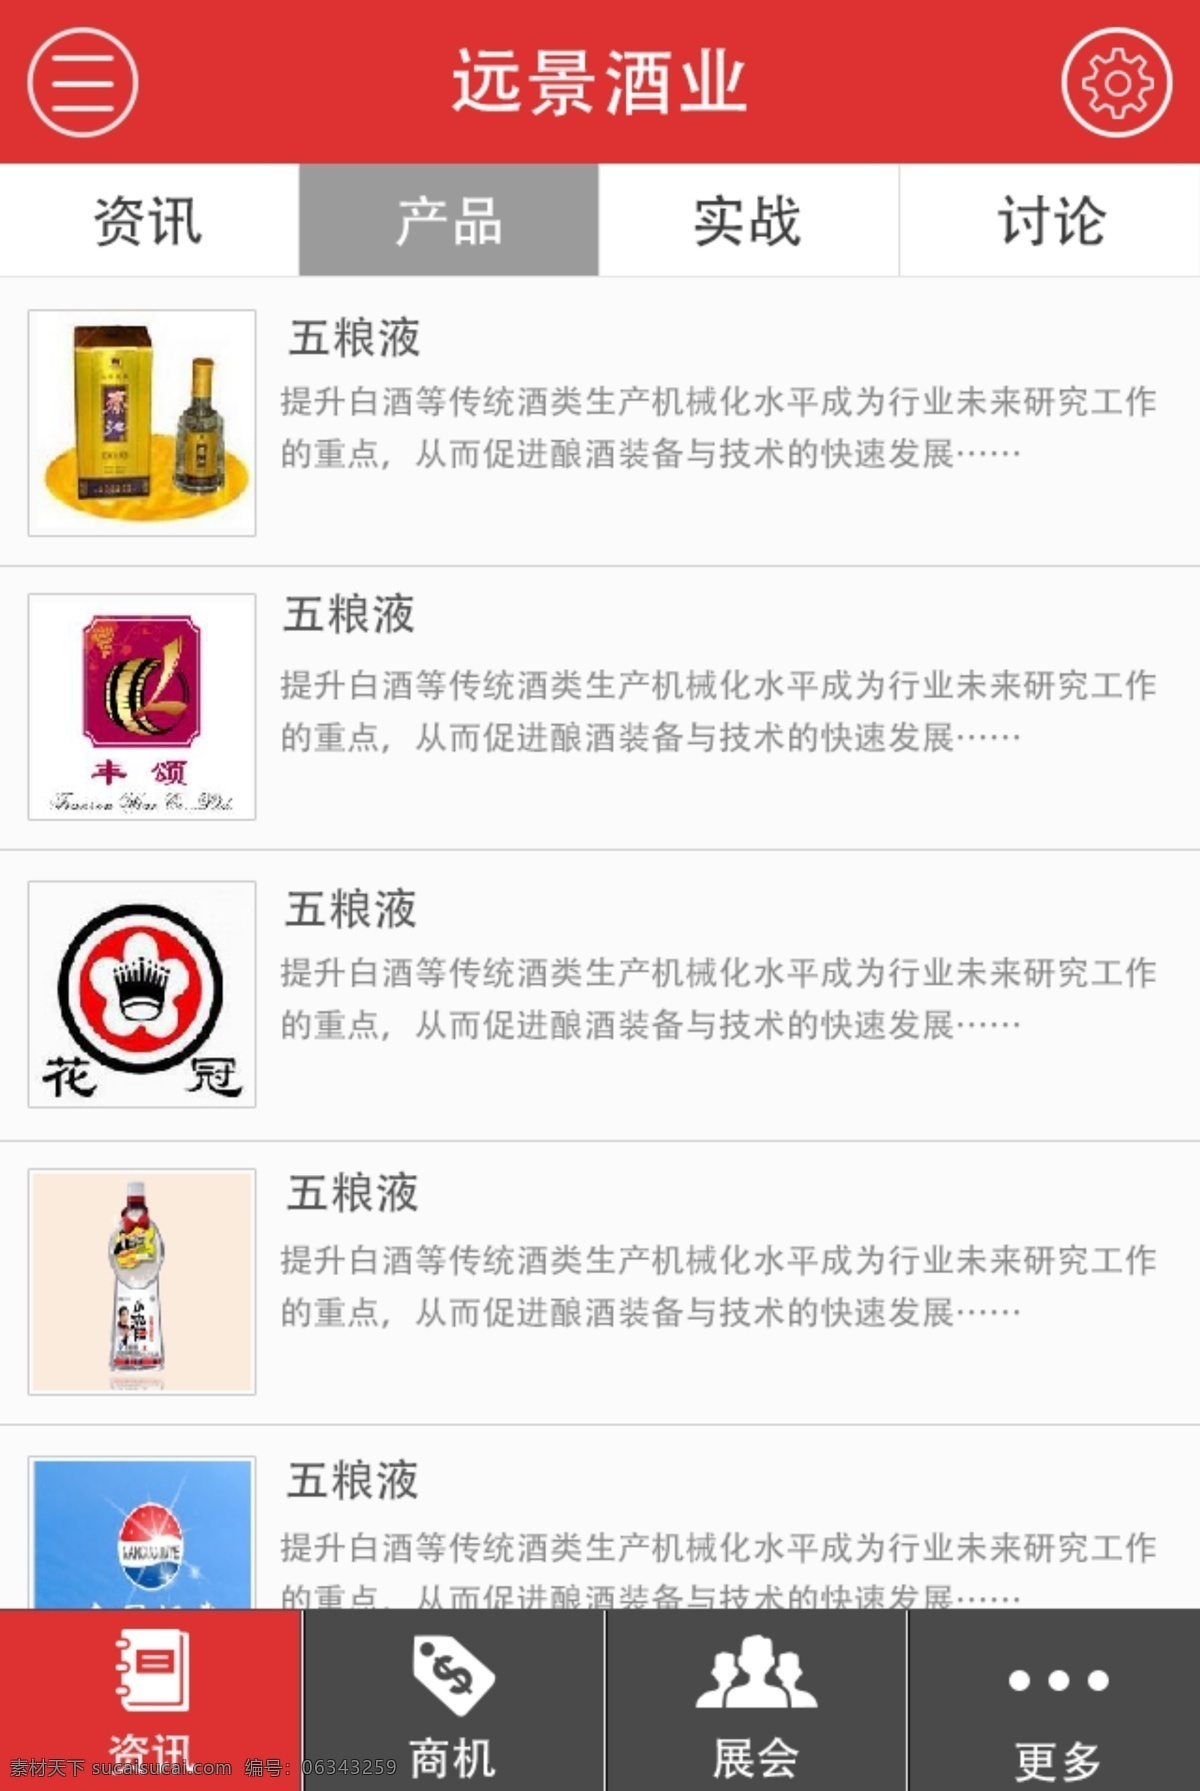 产品 信息 手机 界面 产品信息 红色界面 酒类界面 app app界面